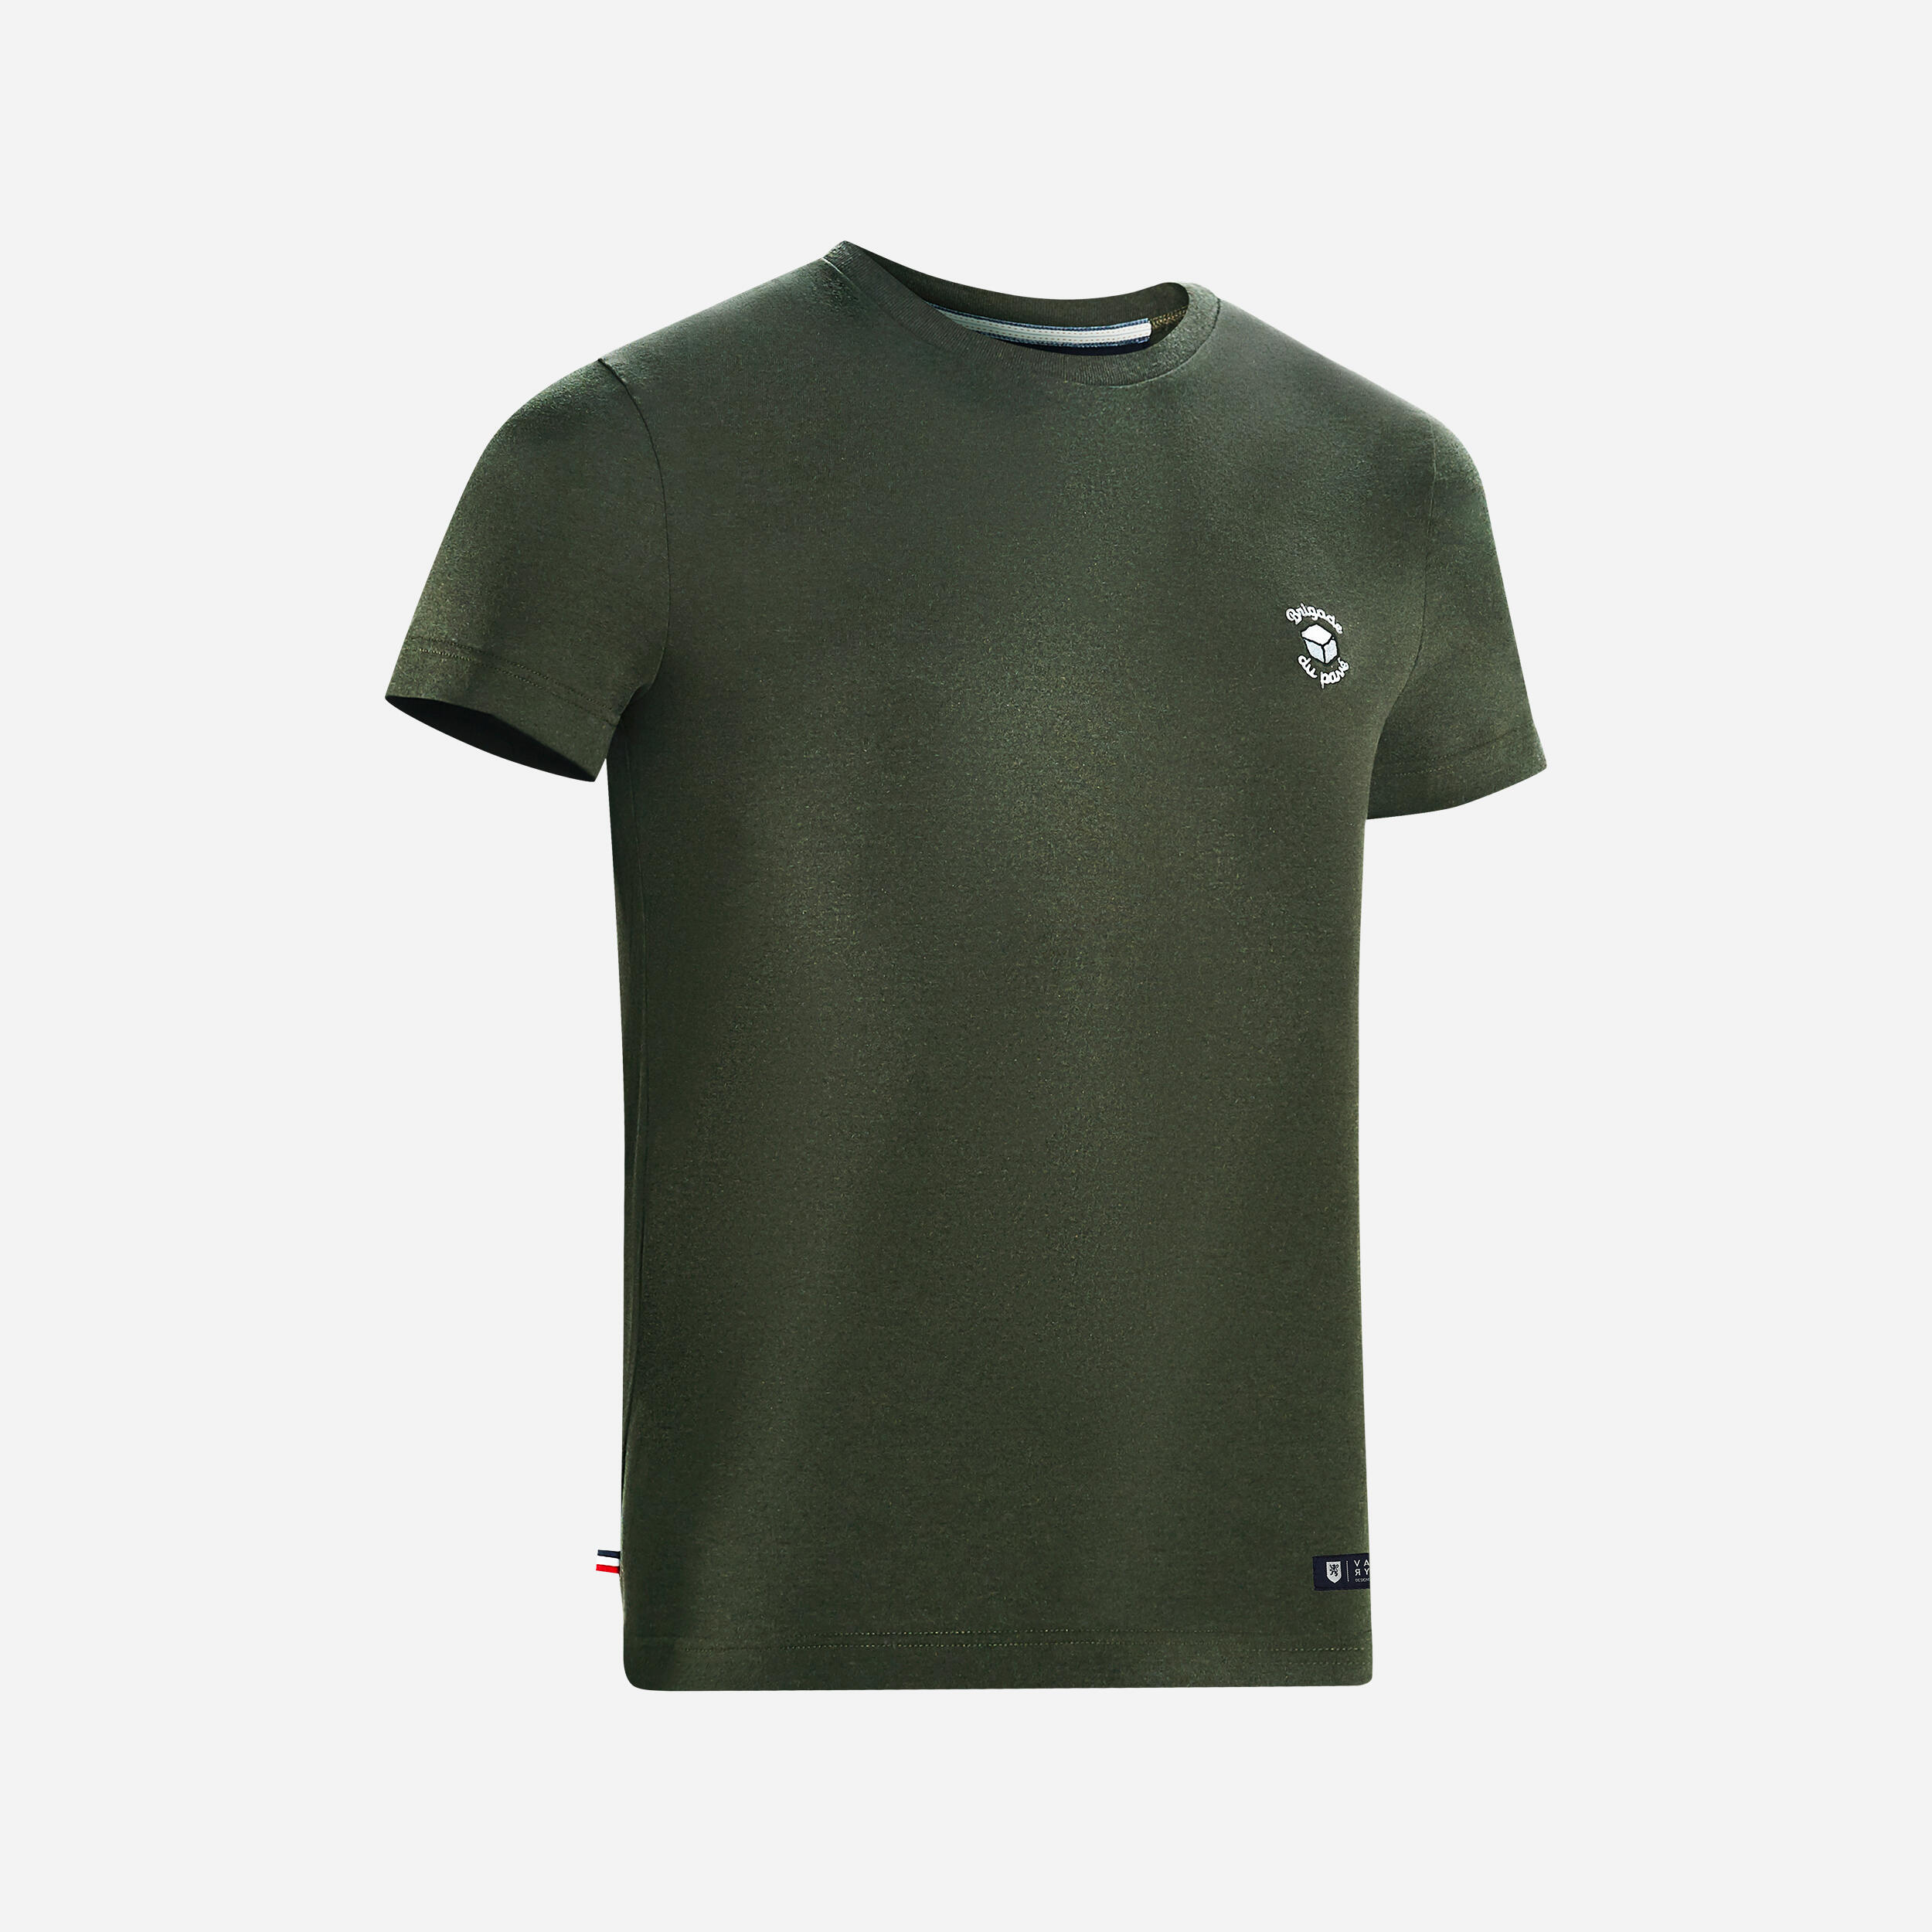 VAN RYSEL T-Shirt Made in France - Brigade du Pavé Khaki